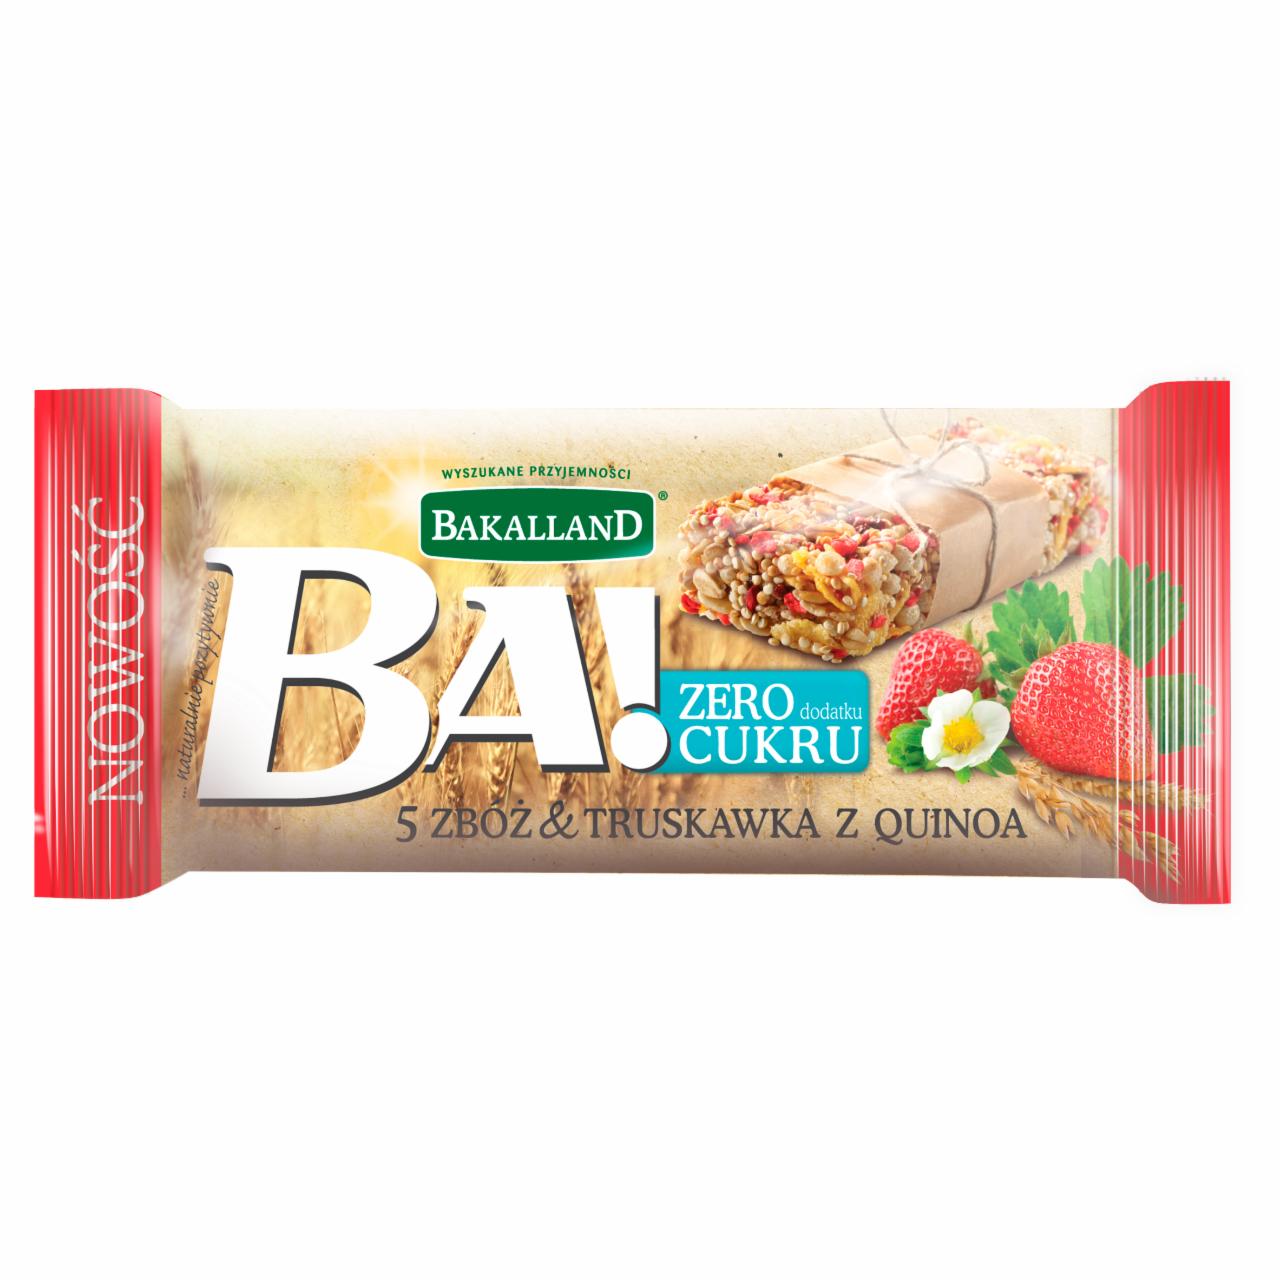 Zdjęcia - Bakalland Ba! 5 zbóż & truskawka z quinoa Baton zbożowy 30 g